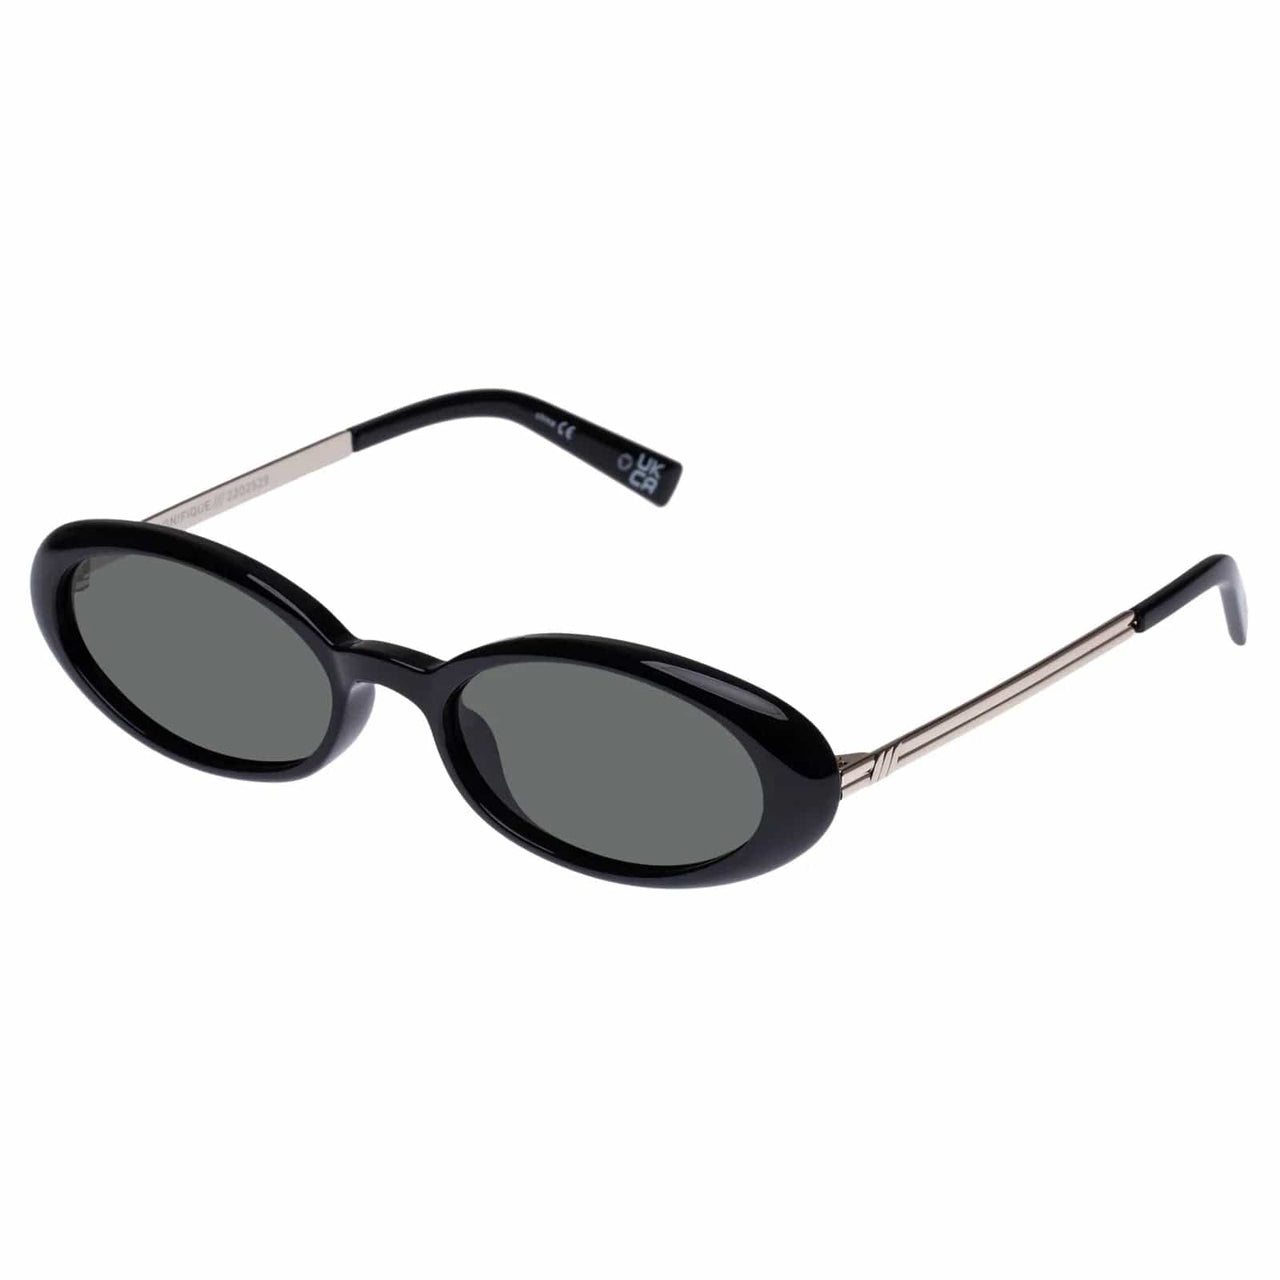 Magnifique Sunglasses Black, Sunglasses by Le Spec | LIT Boutique